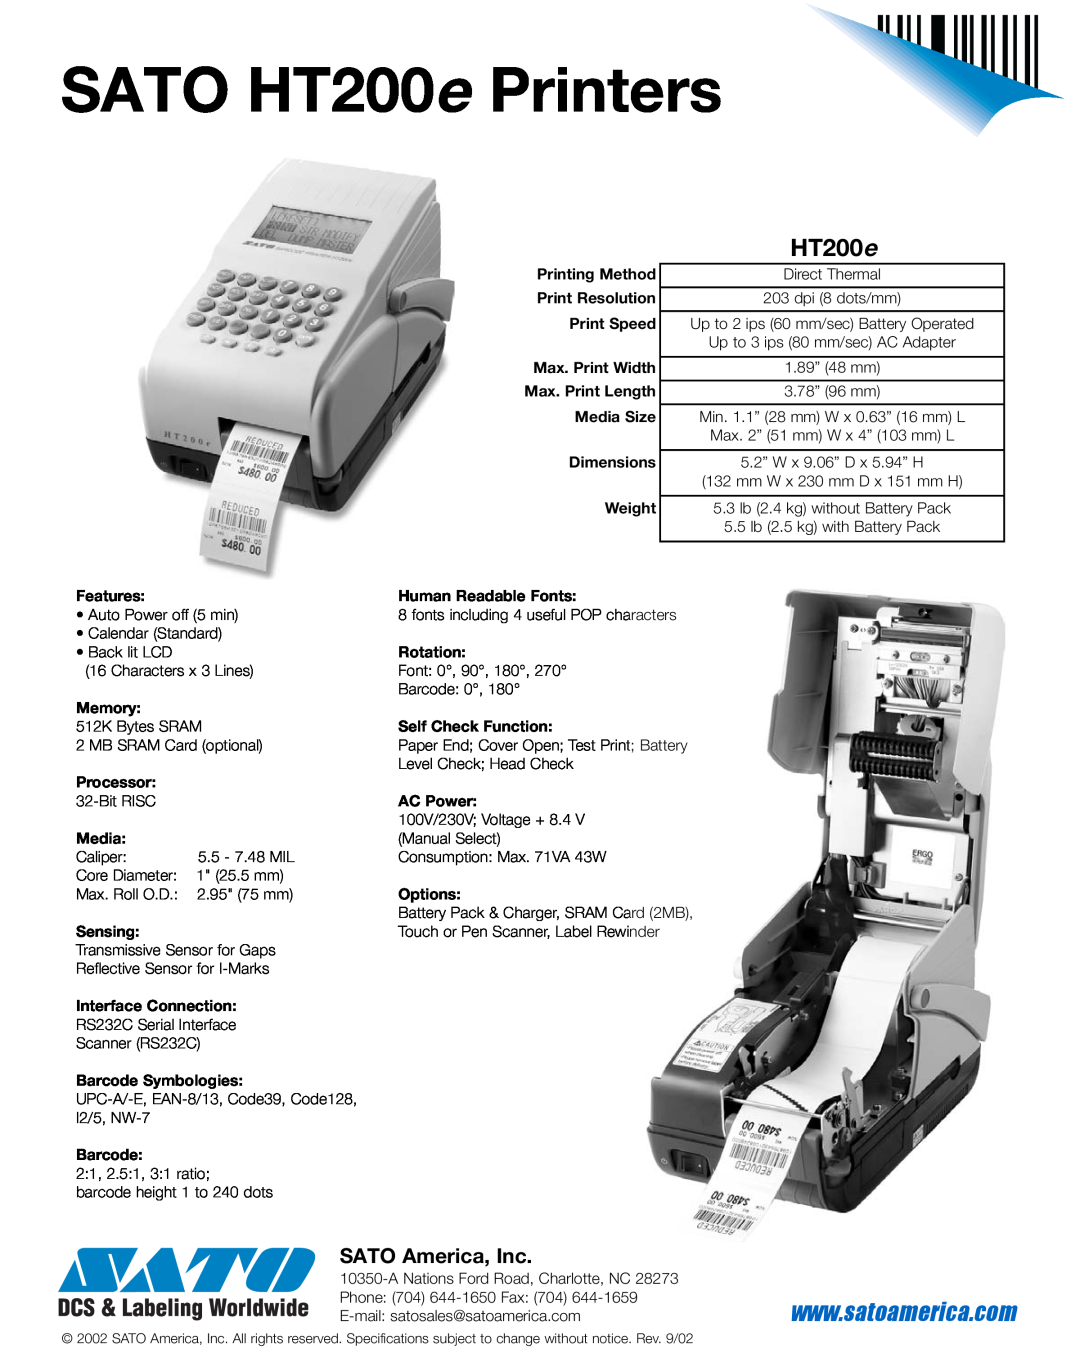 SATO manual HT200 e, SATO America, Inc, SATO HT200e Printers 